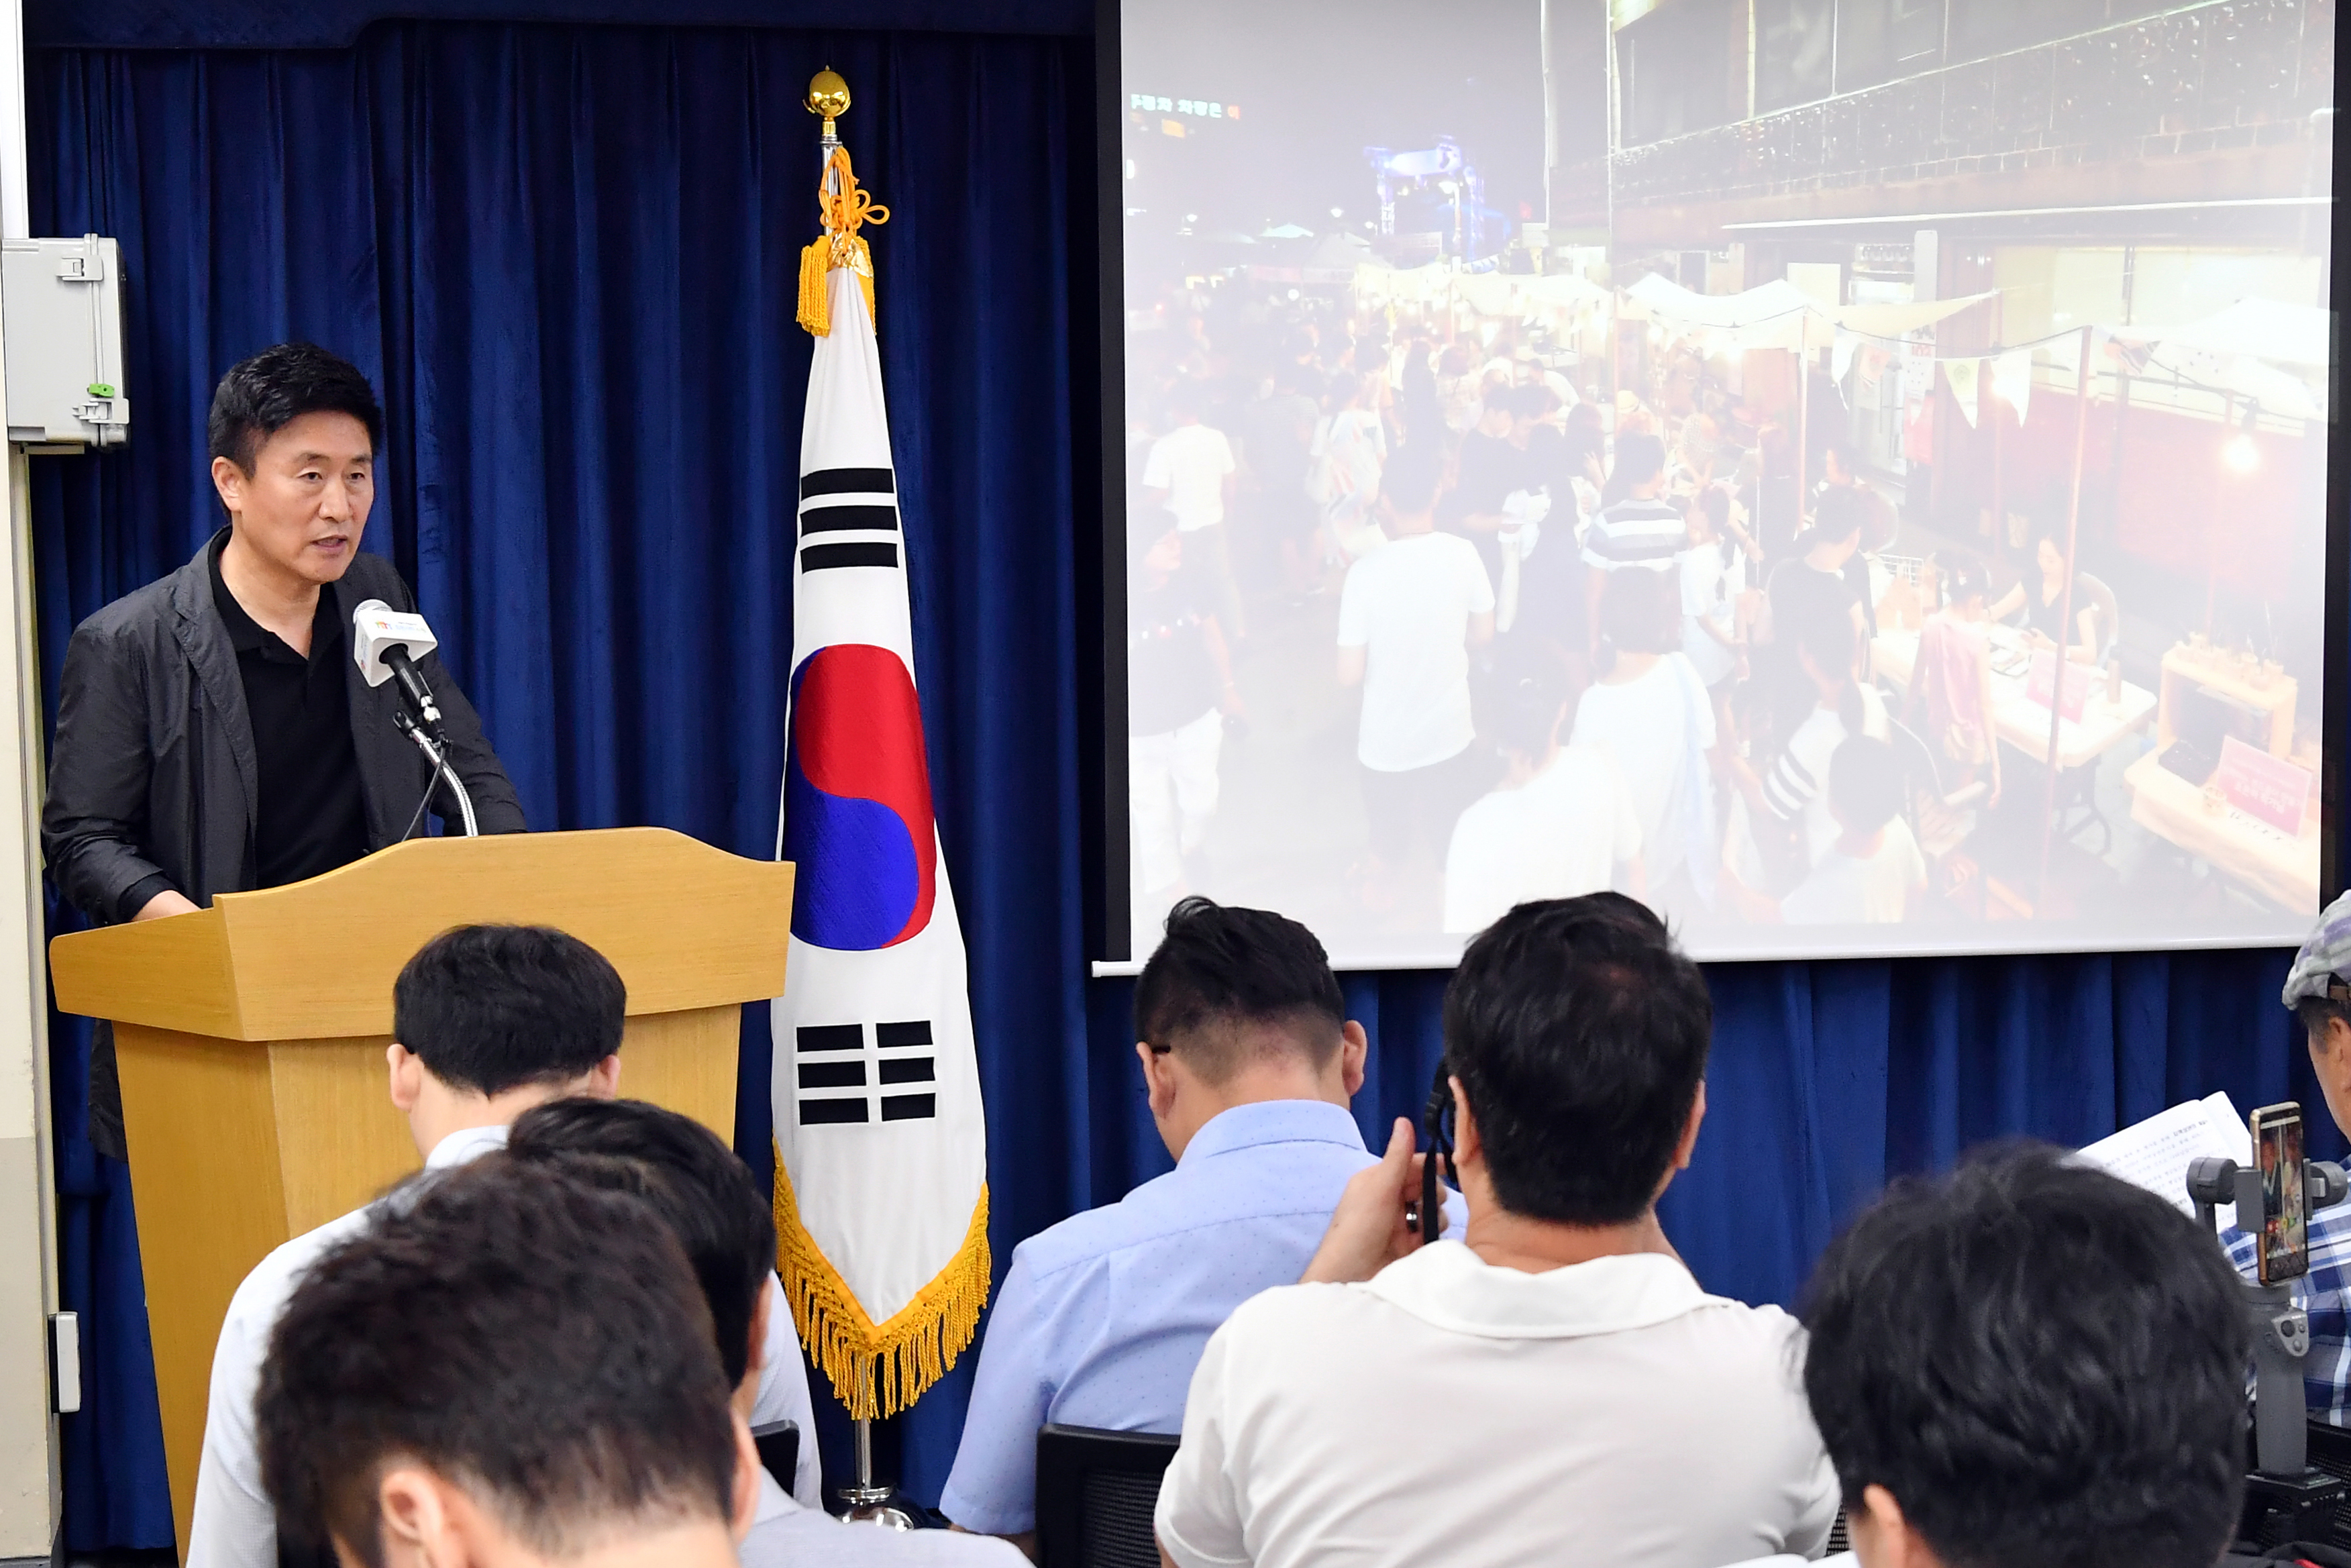 길영배 수원시 문화체육교육국장은 1일 수원 화성행궁 일원에서 열리는 ‘2019 한여름 밤, 문화예술의 향연’ 행사 계획을 설명하고 있다.